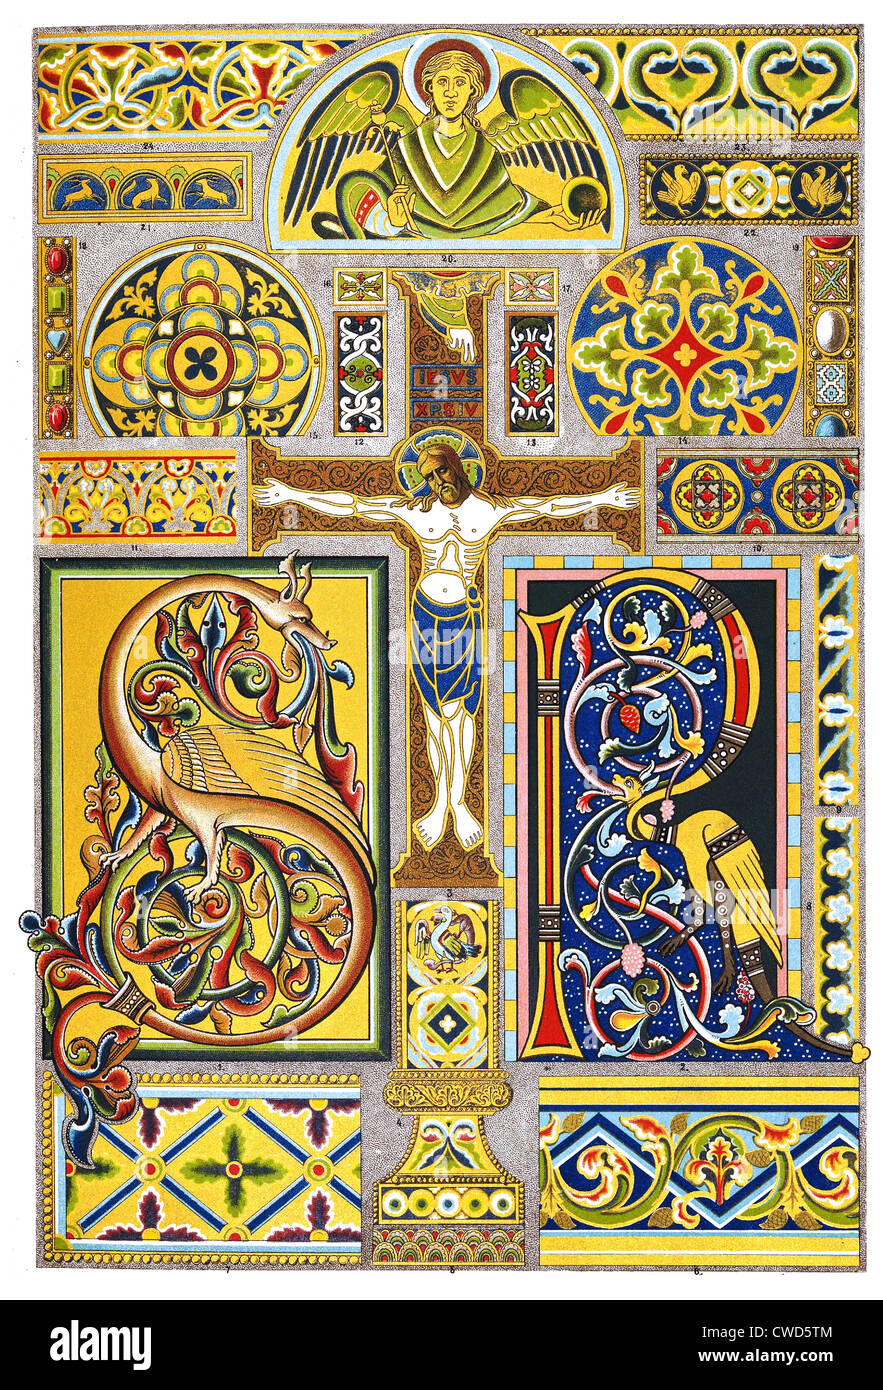 Moyen Âge romane éclairage manuscrit et de l'émail Banque D'Images